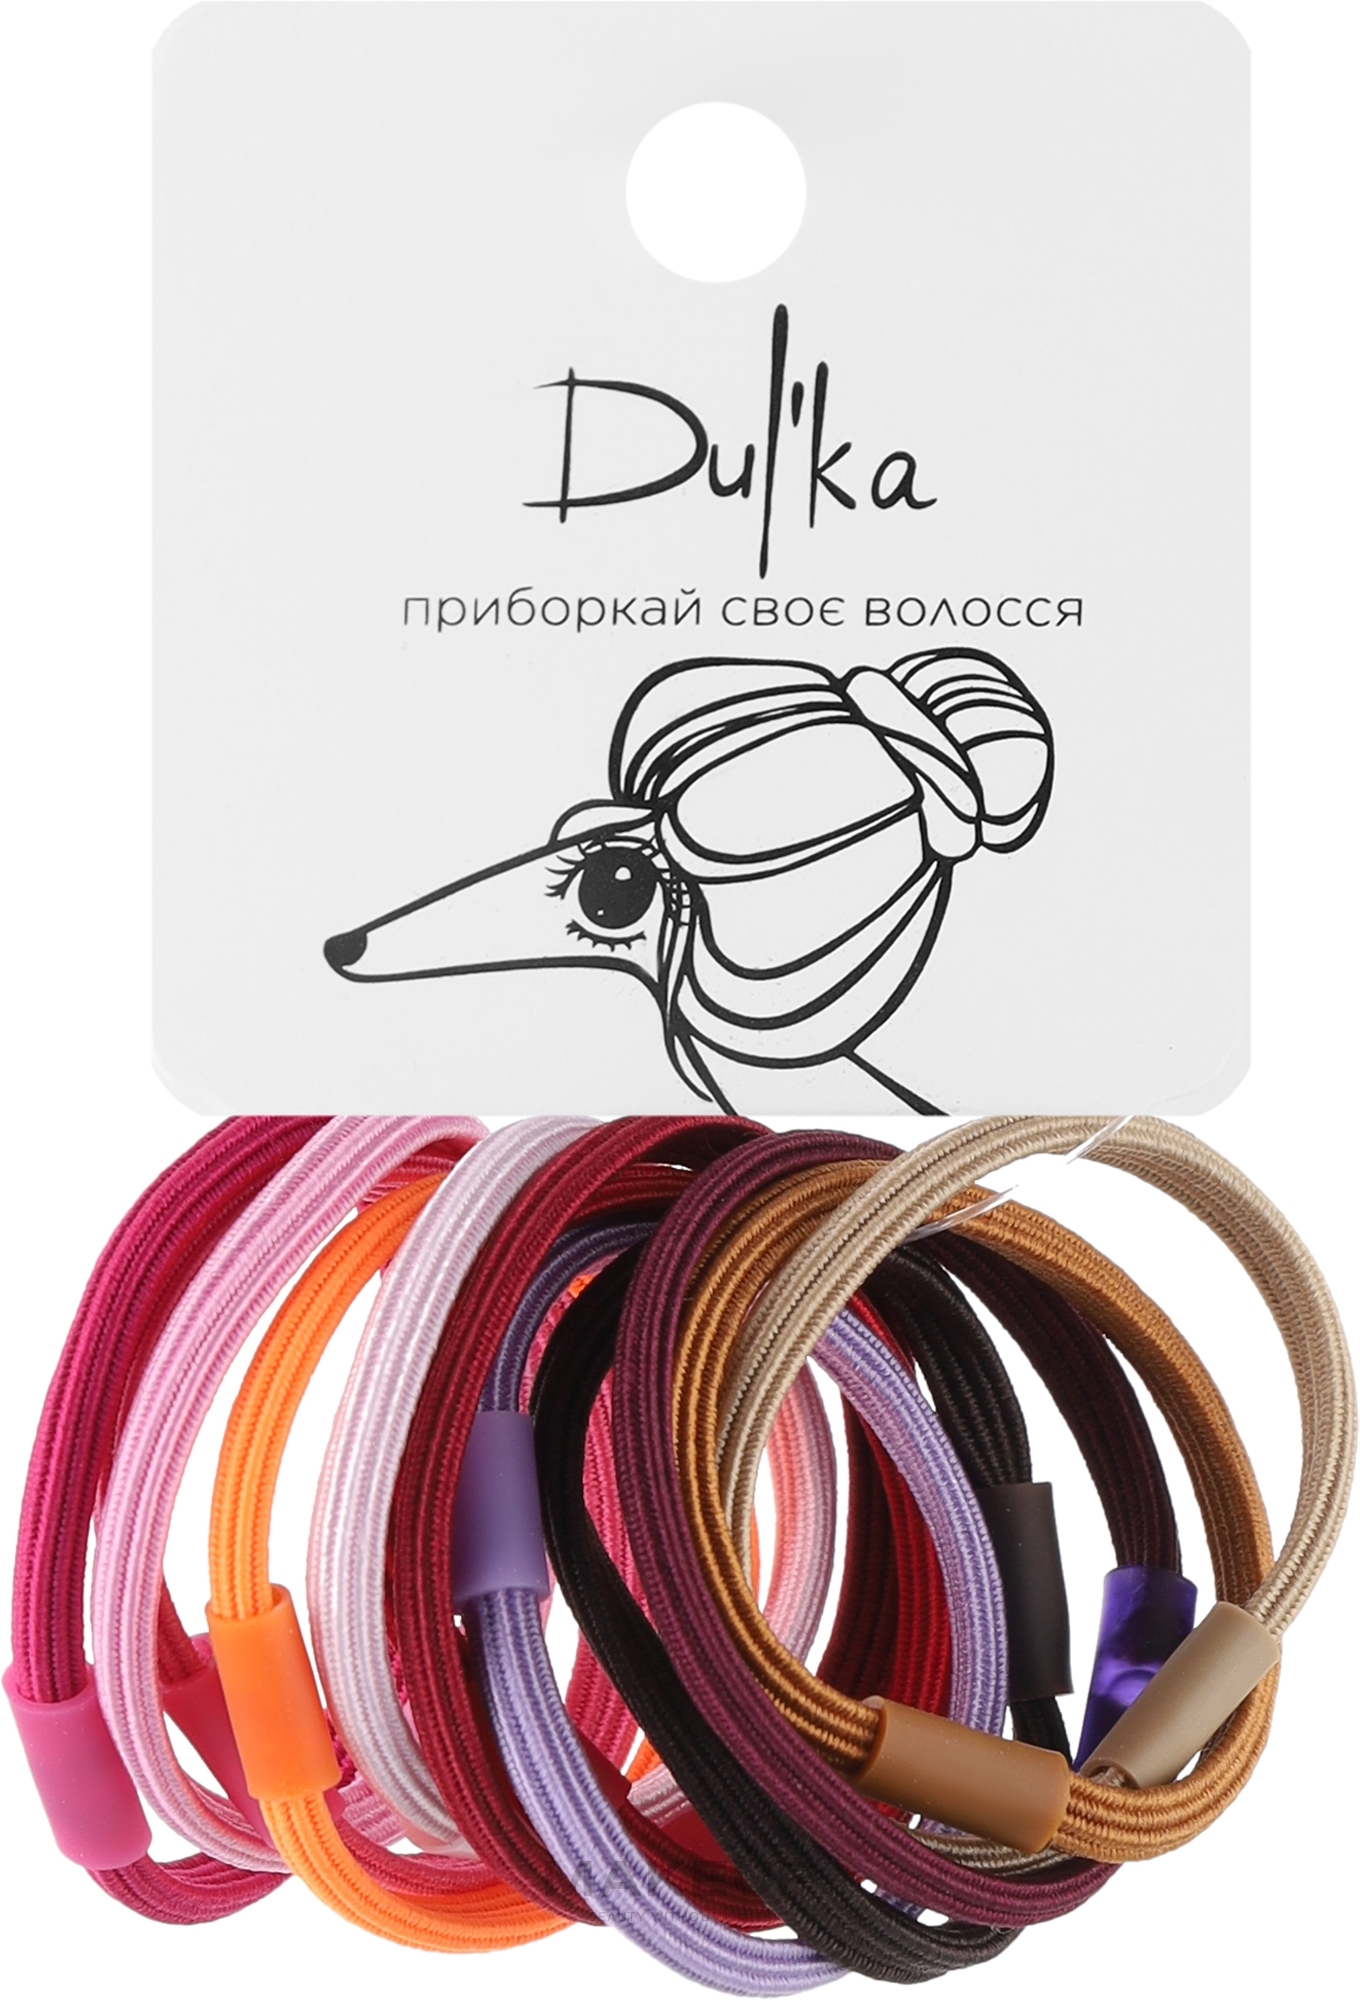 Набор разноцветных резинок для волос UH717714, 12 шт - Dulka  — фото 12шт